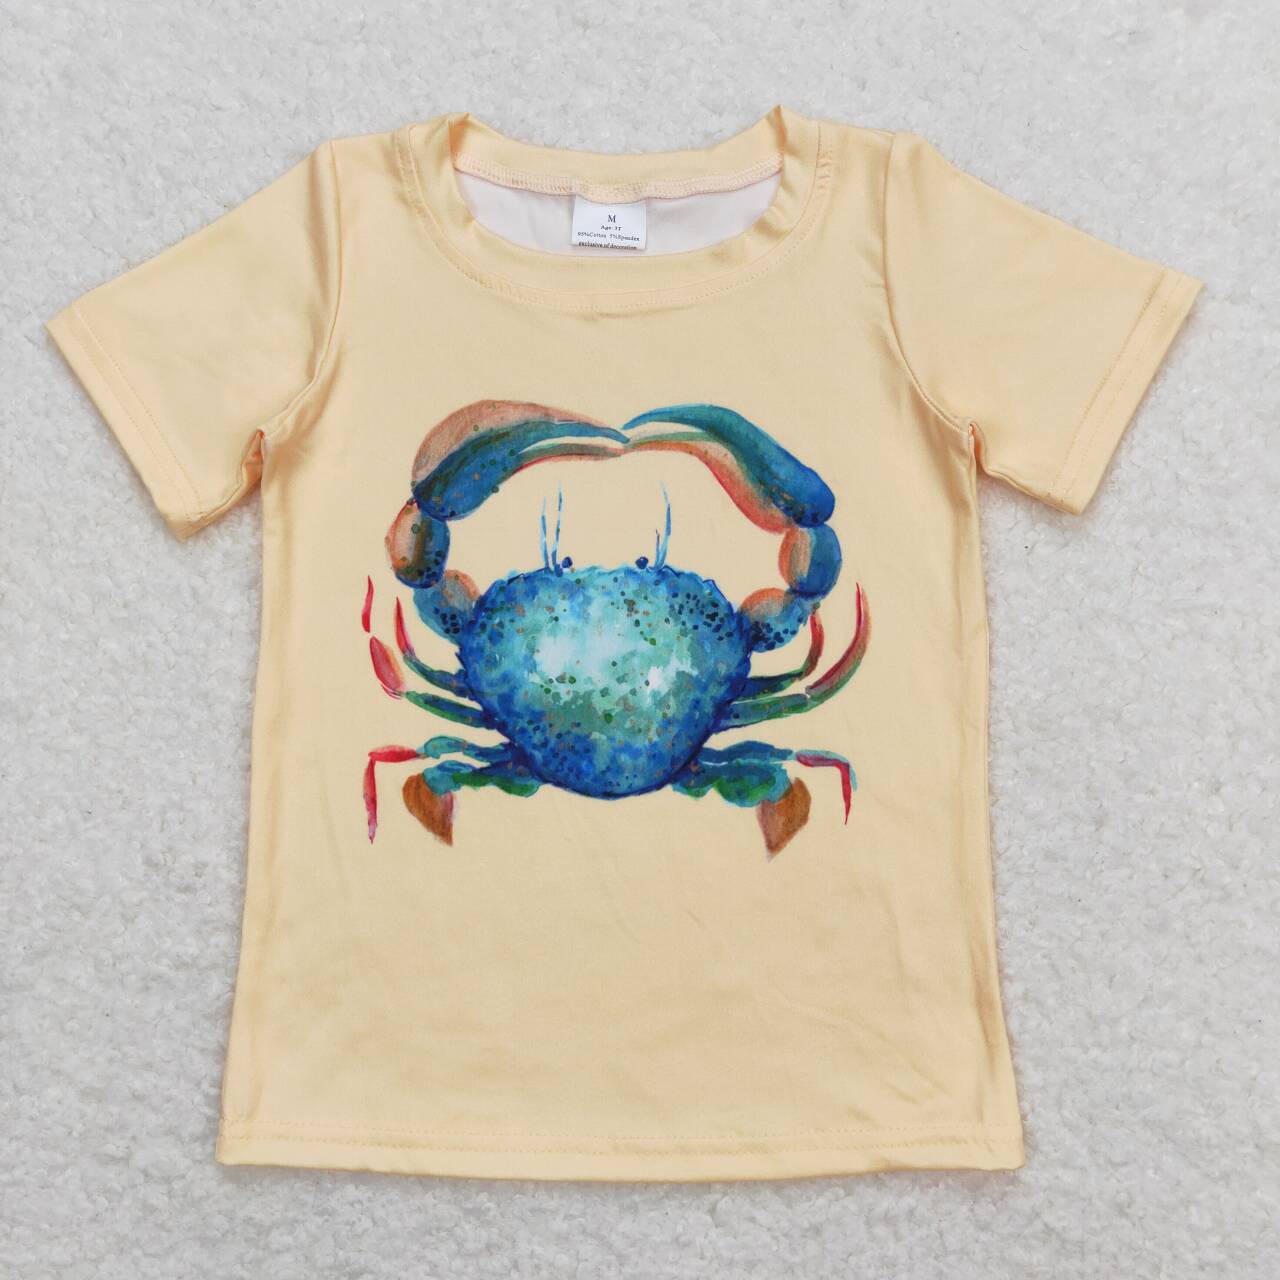 crab tee kids clothing